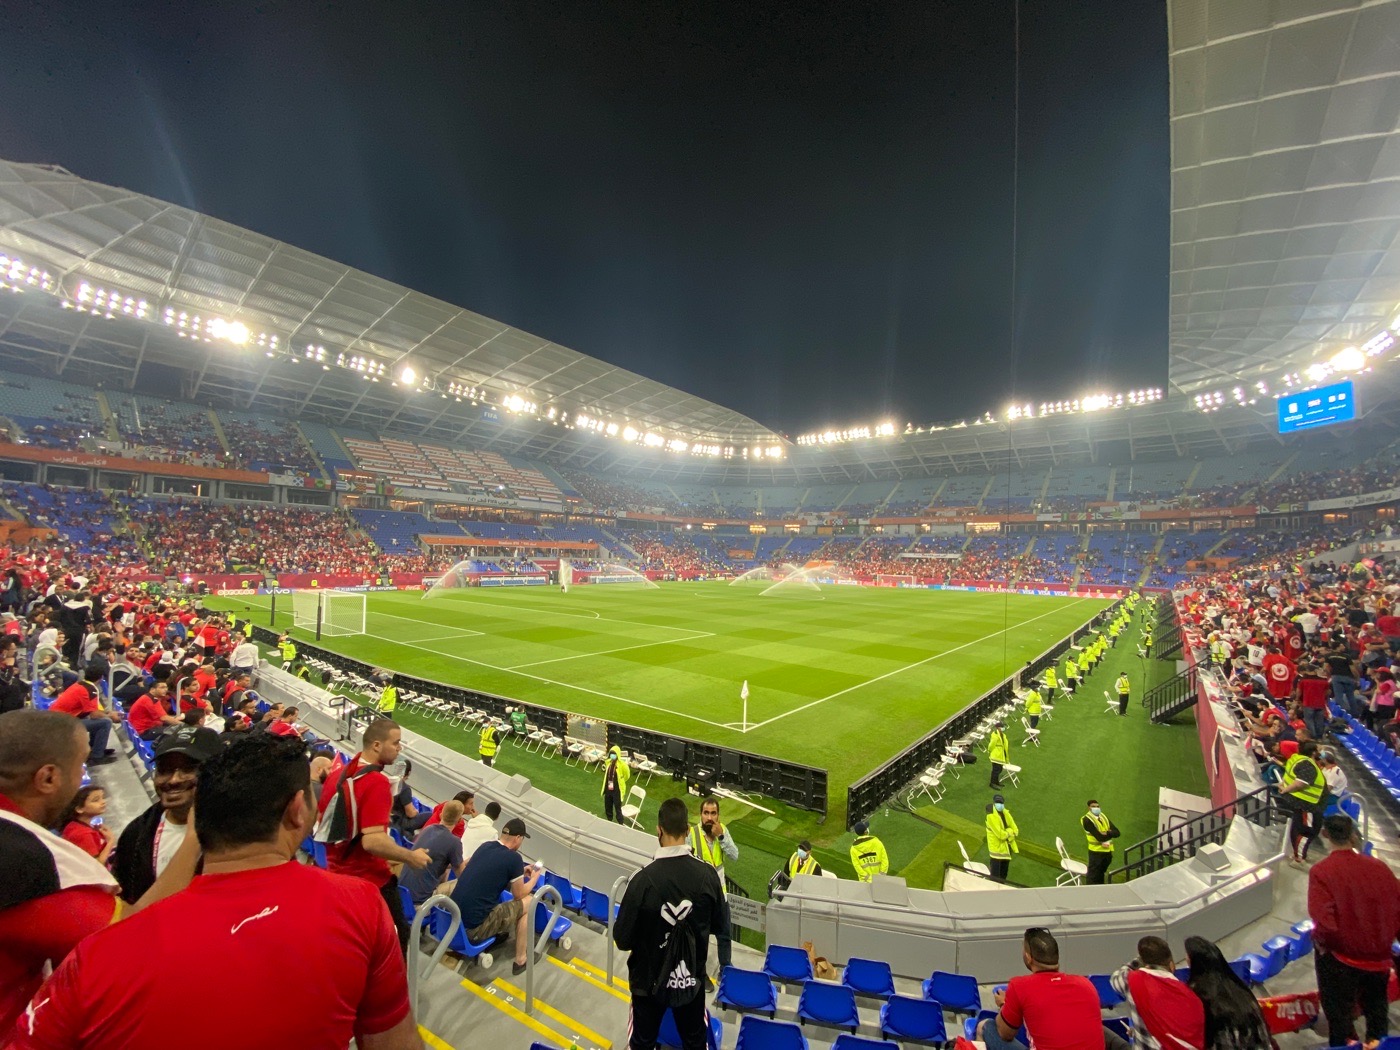 Stadion "974" bzw "Ras Abu Aboud Stadium" in Doha/Katar (Foto: eigene Quelle)